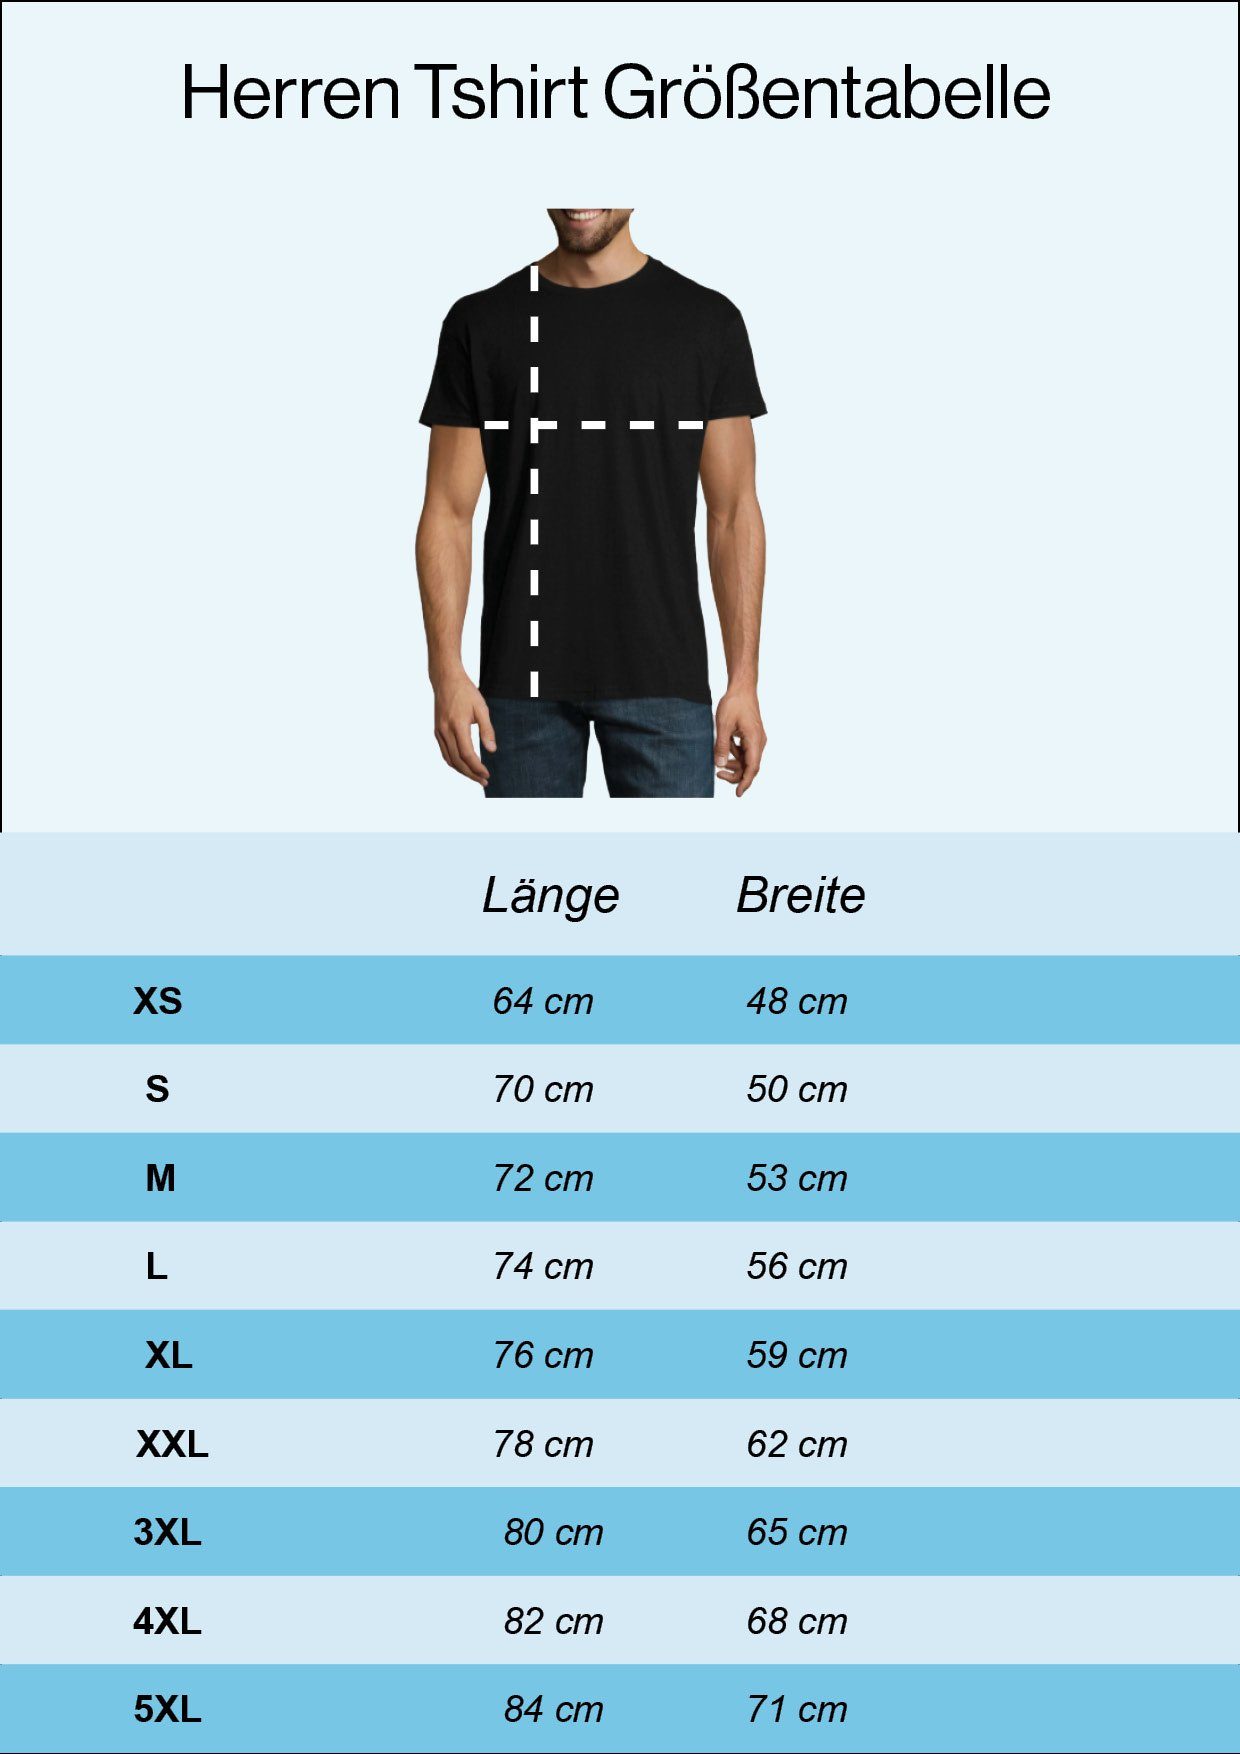 Navyblau Frontprint Kompass Youth Herren mit Shirt trendigem Designz Anker T-Shirt